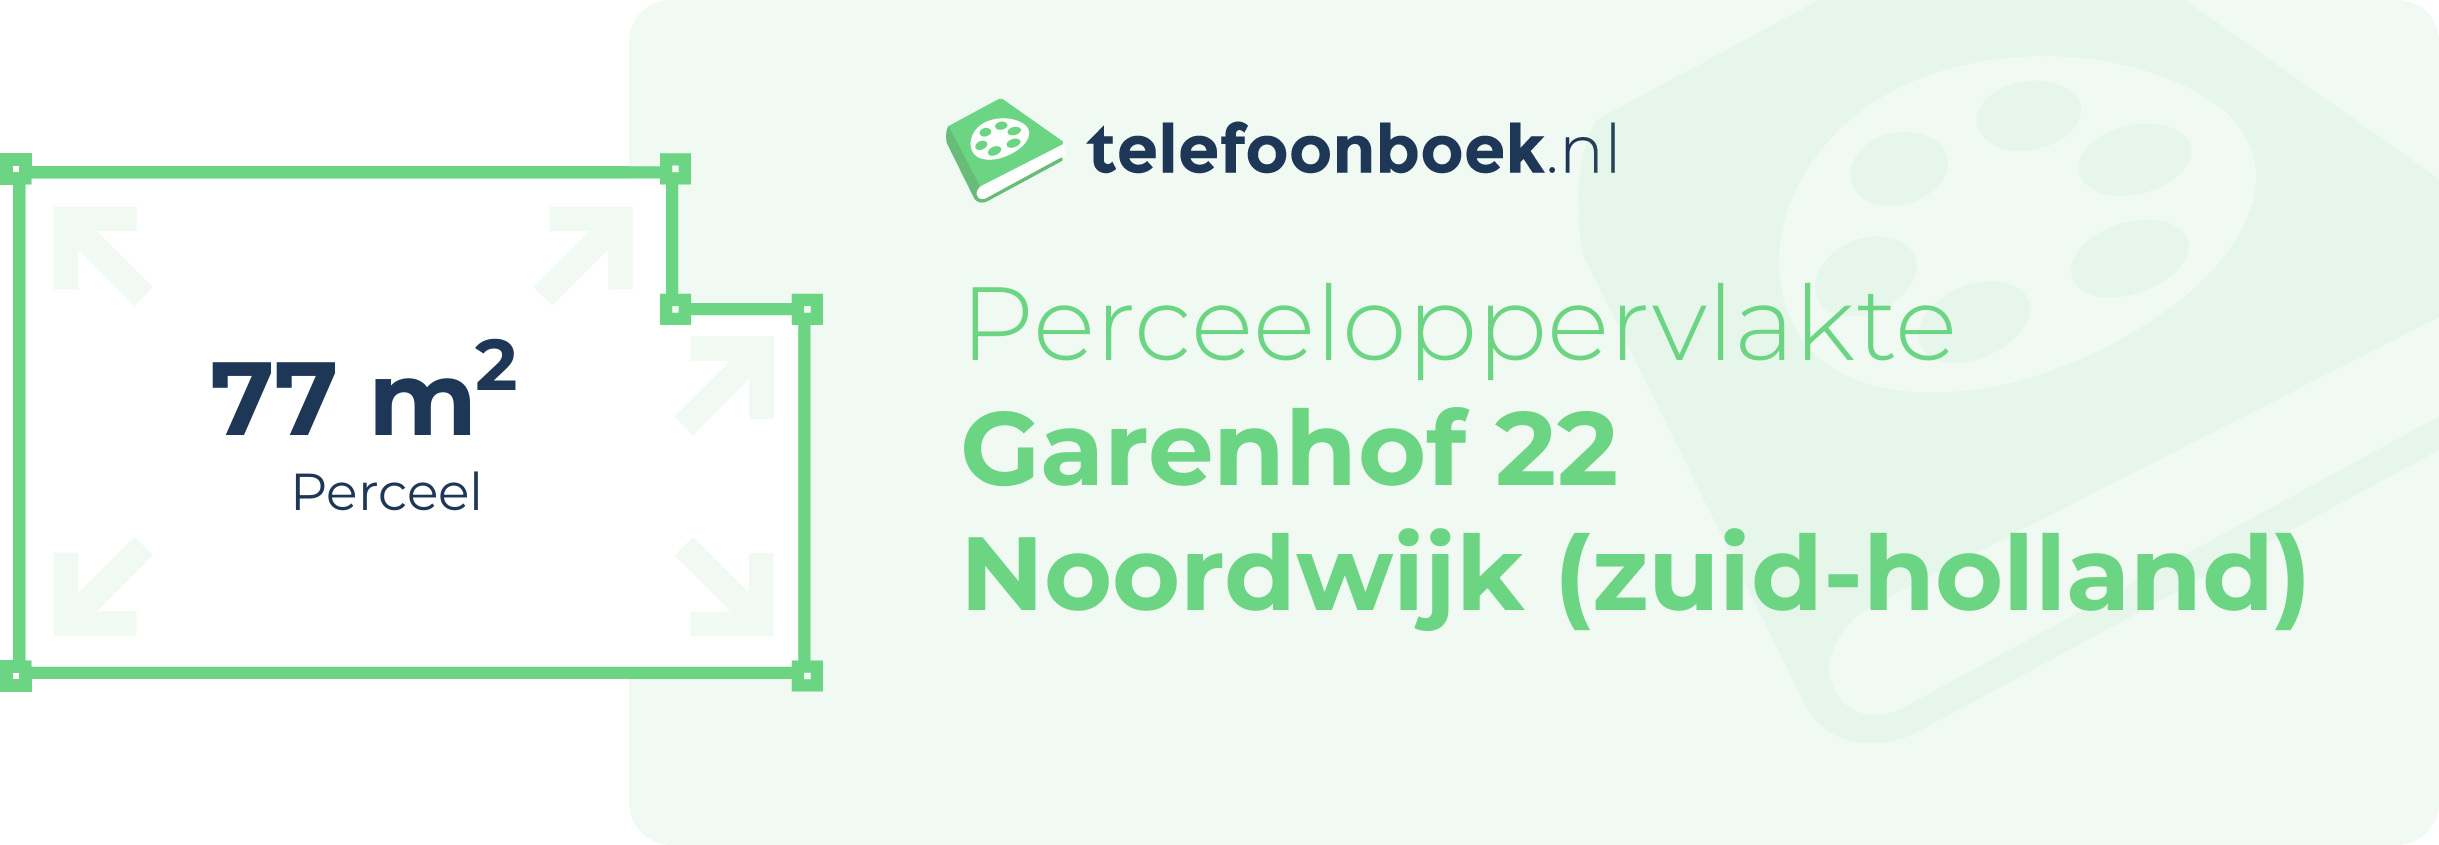 Perceeloppervlakte Garenhof 22 Noordwijk (Zuid-Holland)